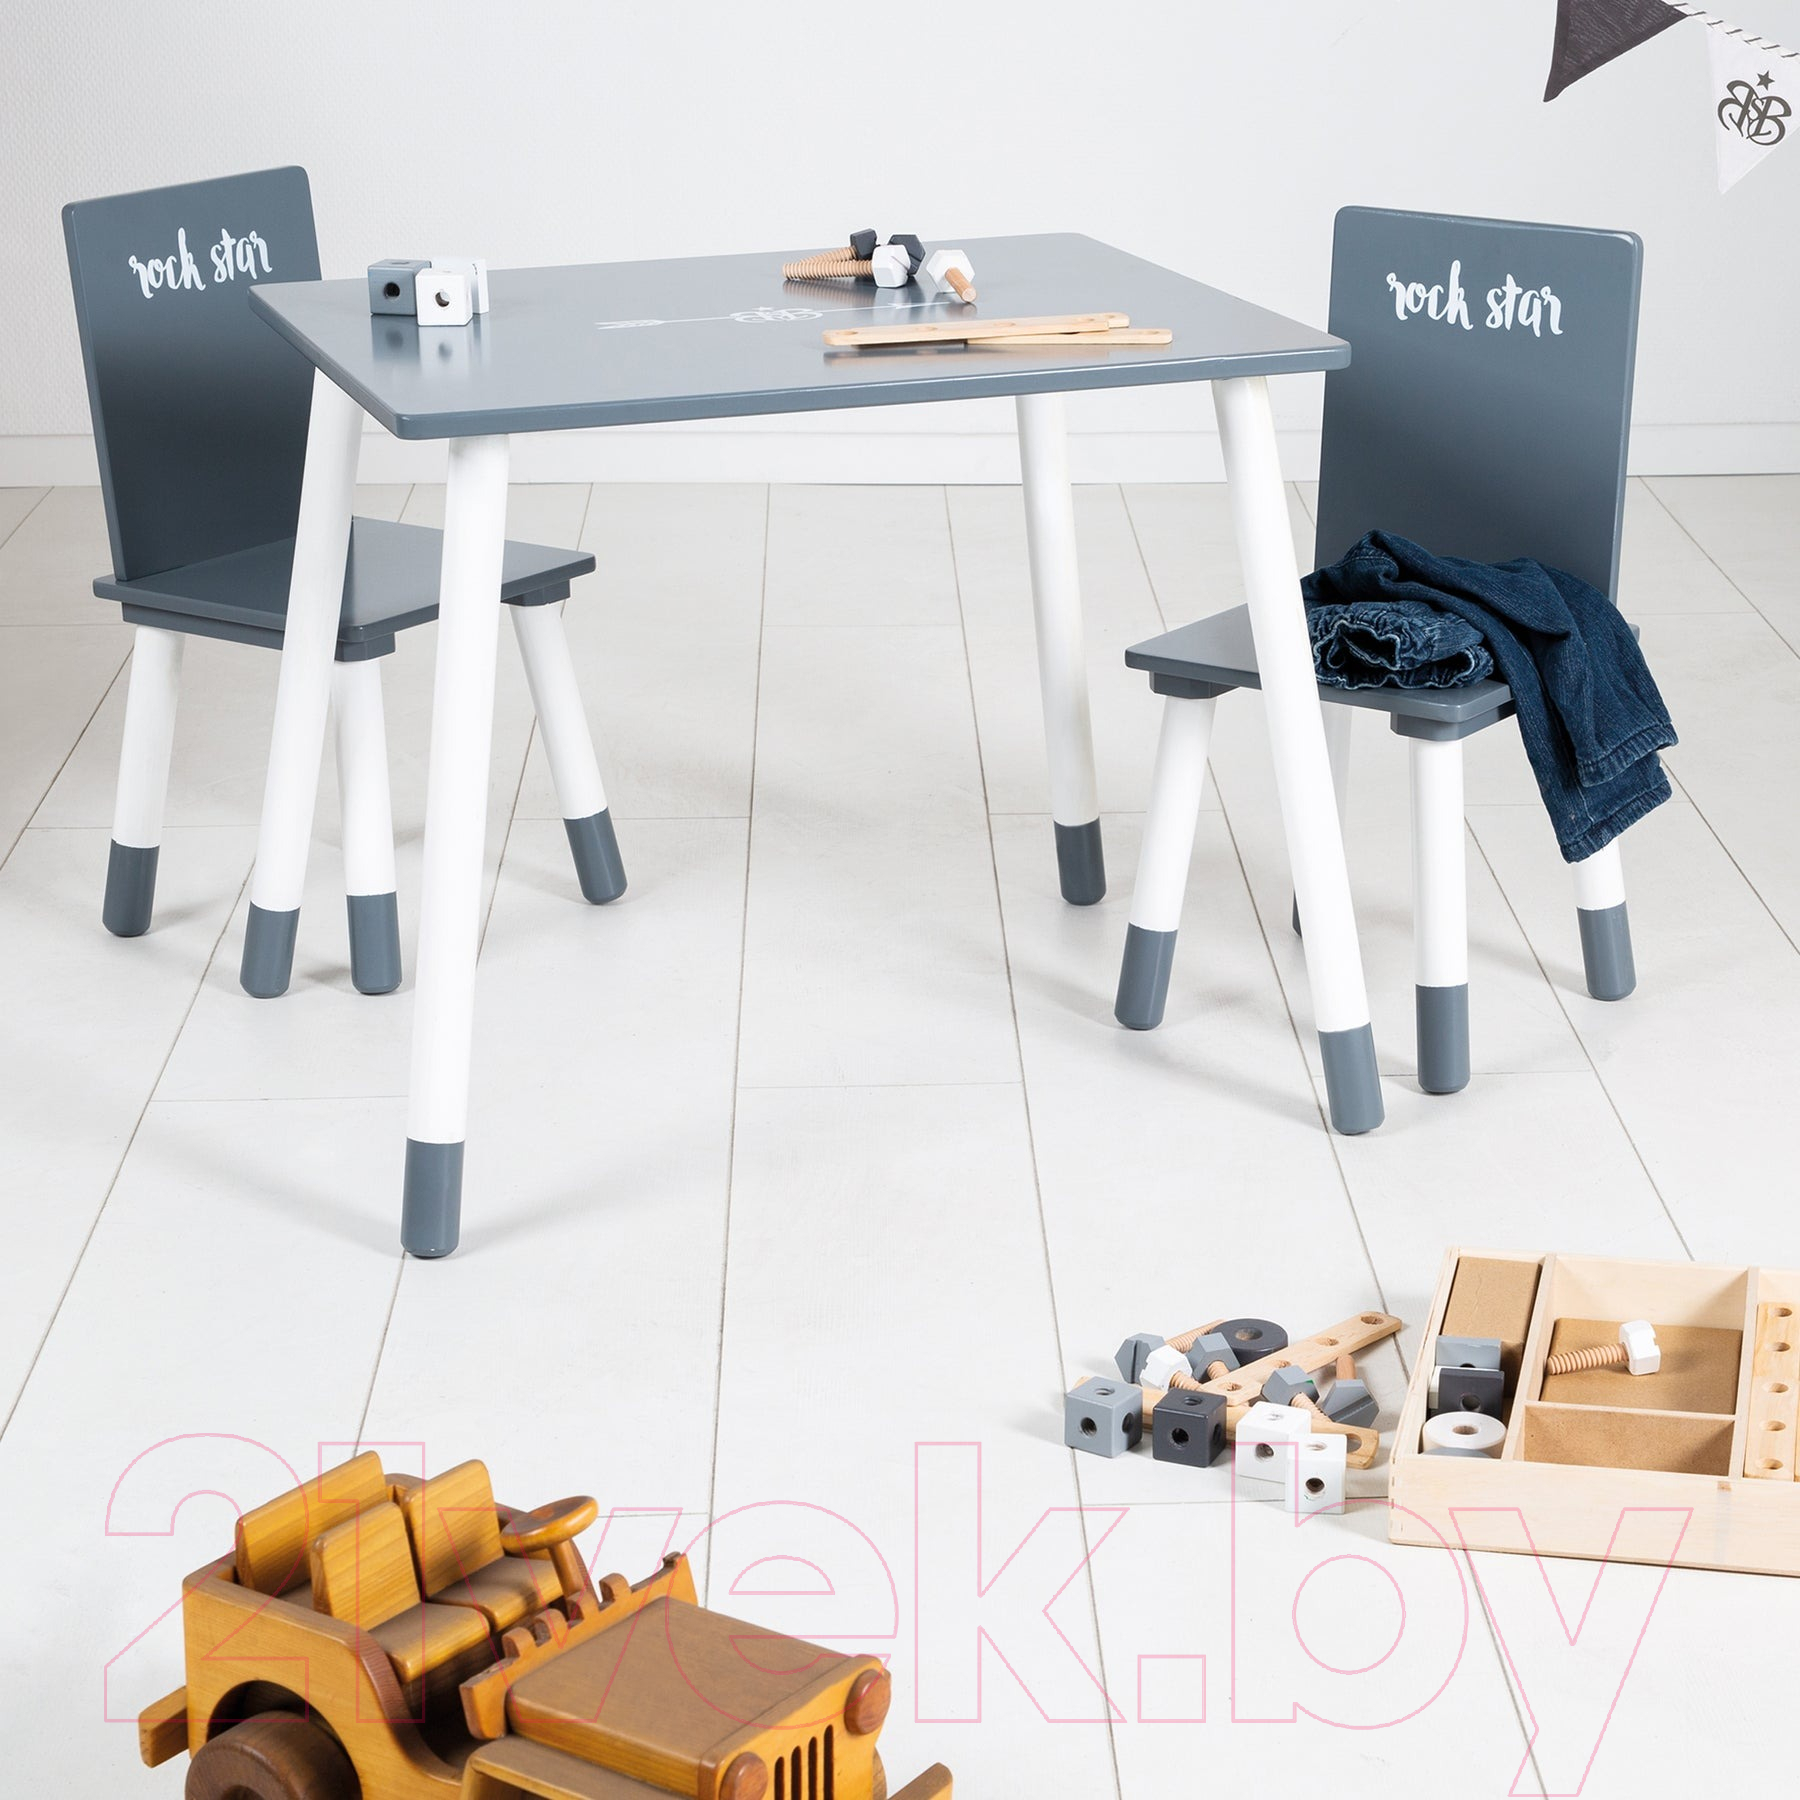 Комплект мебели с детским столом Roba Rock Star Baby / 450019RS3